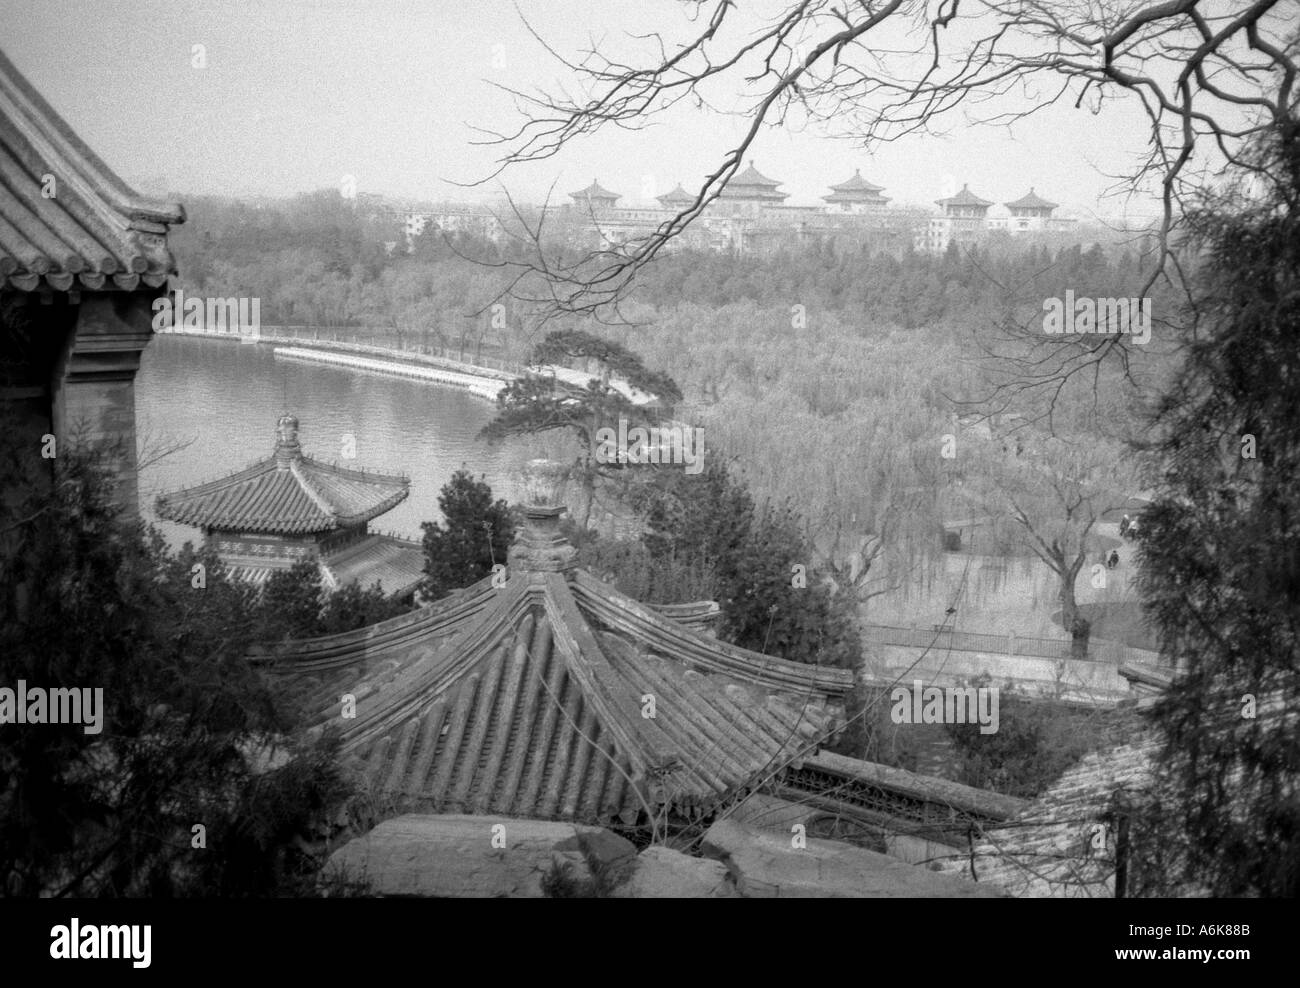 Kunming See Sommerpalast UNESCO Welt Erbe Website Beijing Peking China chinesische asiatische asiatische Asia Stockfoto